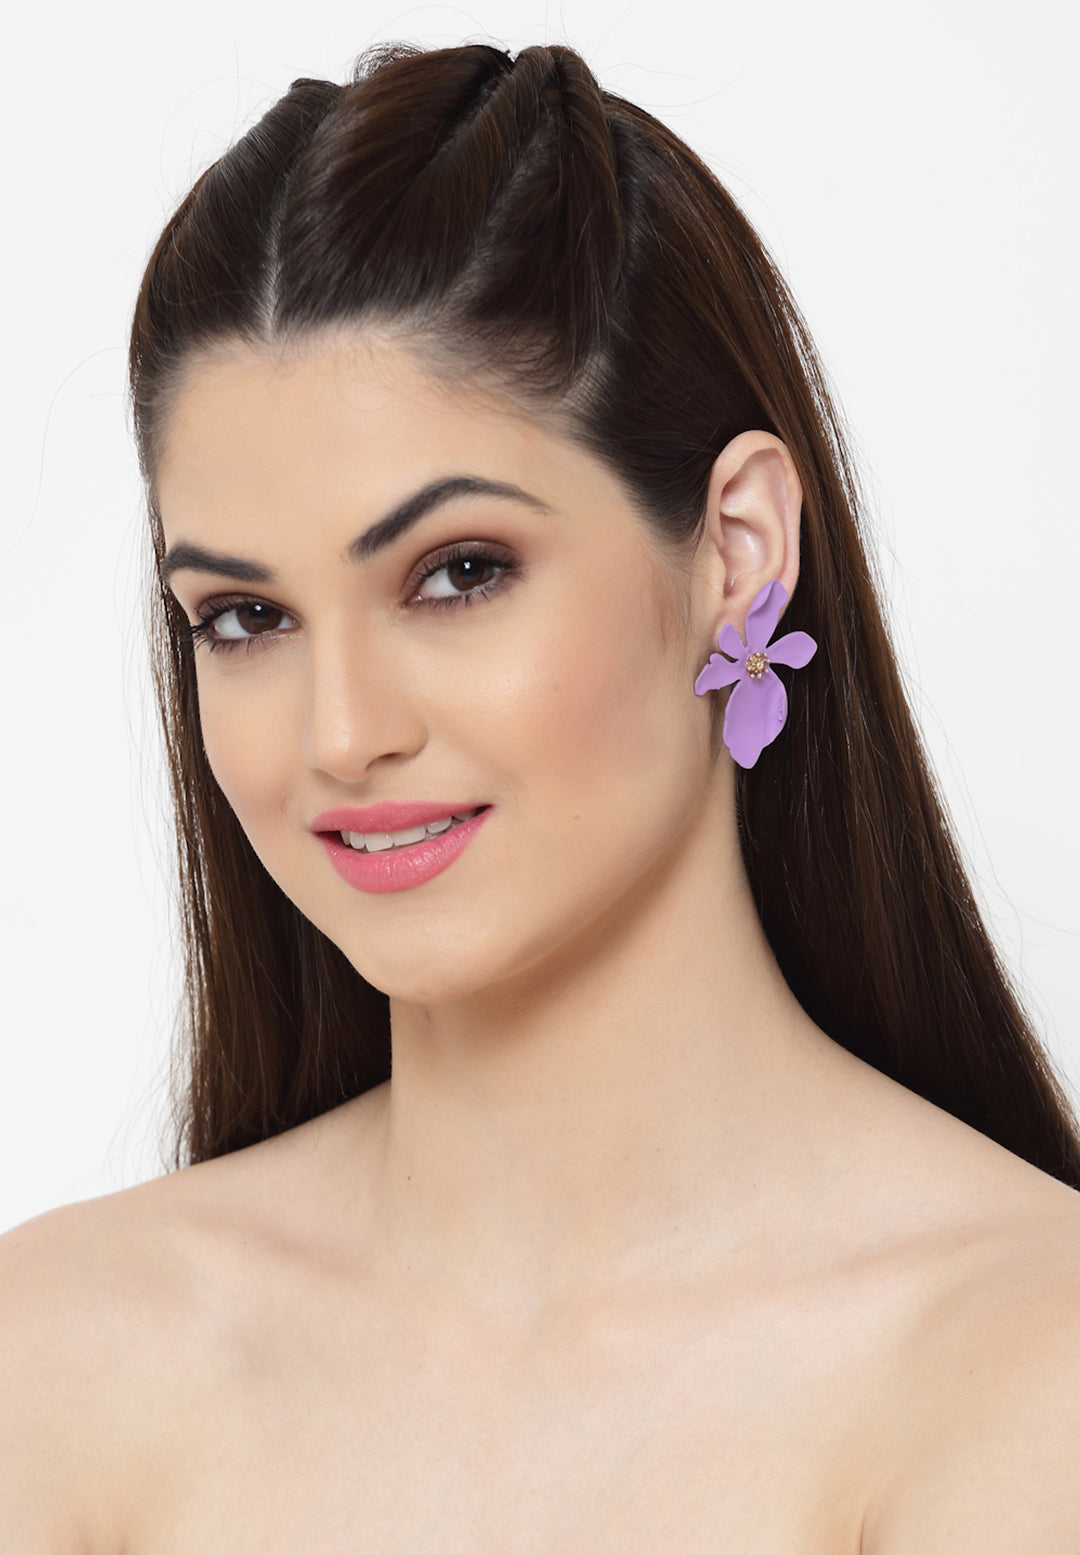 Floral Stud earrings